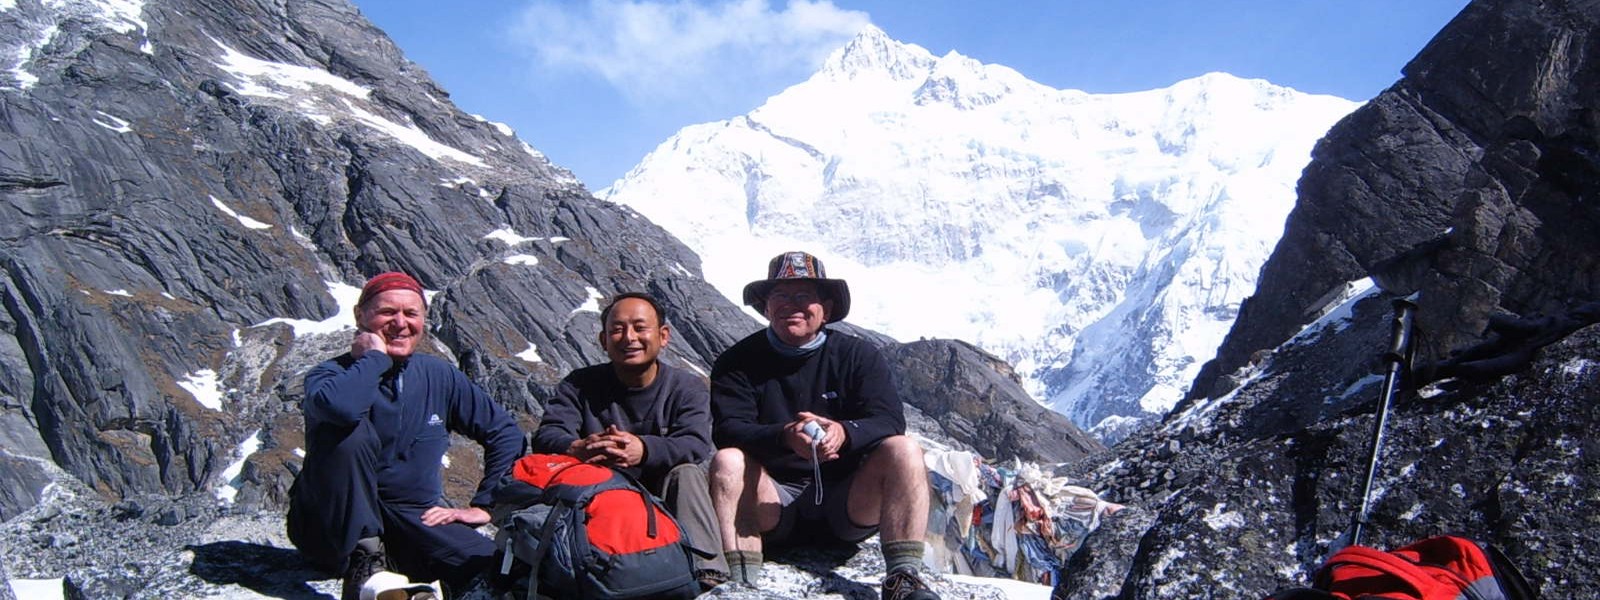 Sikkim - Darjeeling Tours and Trekking